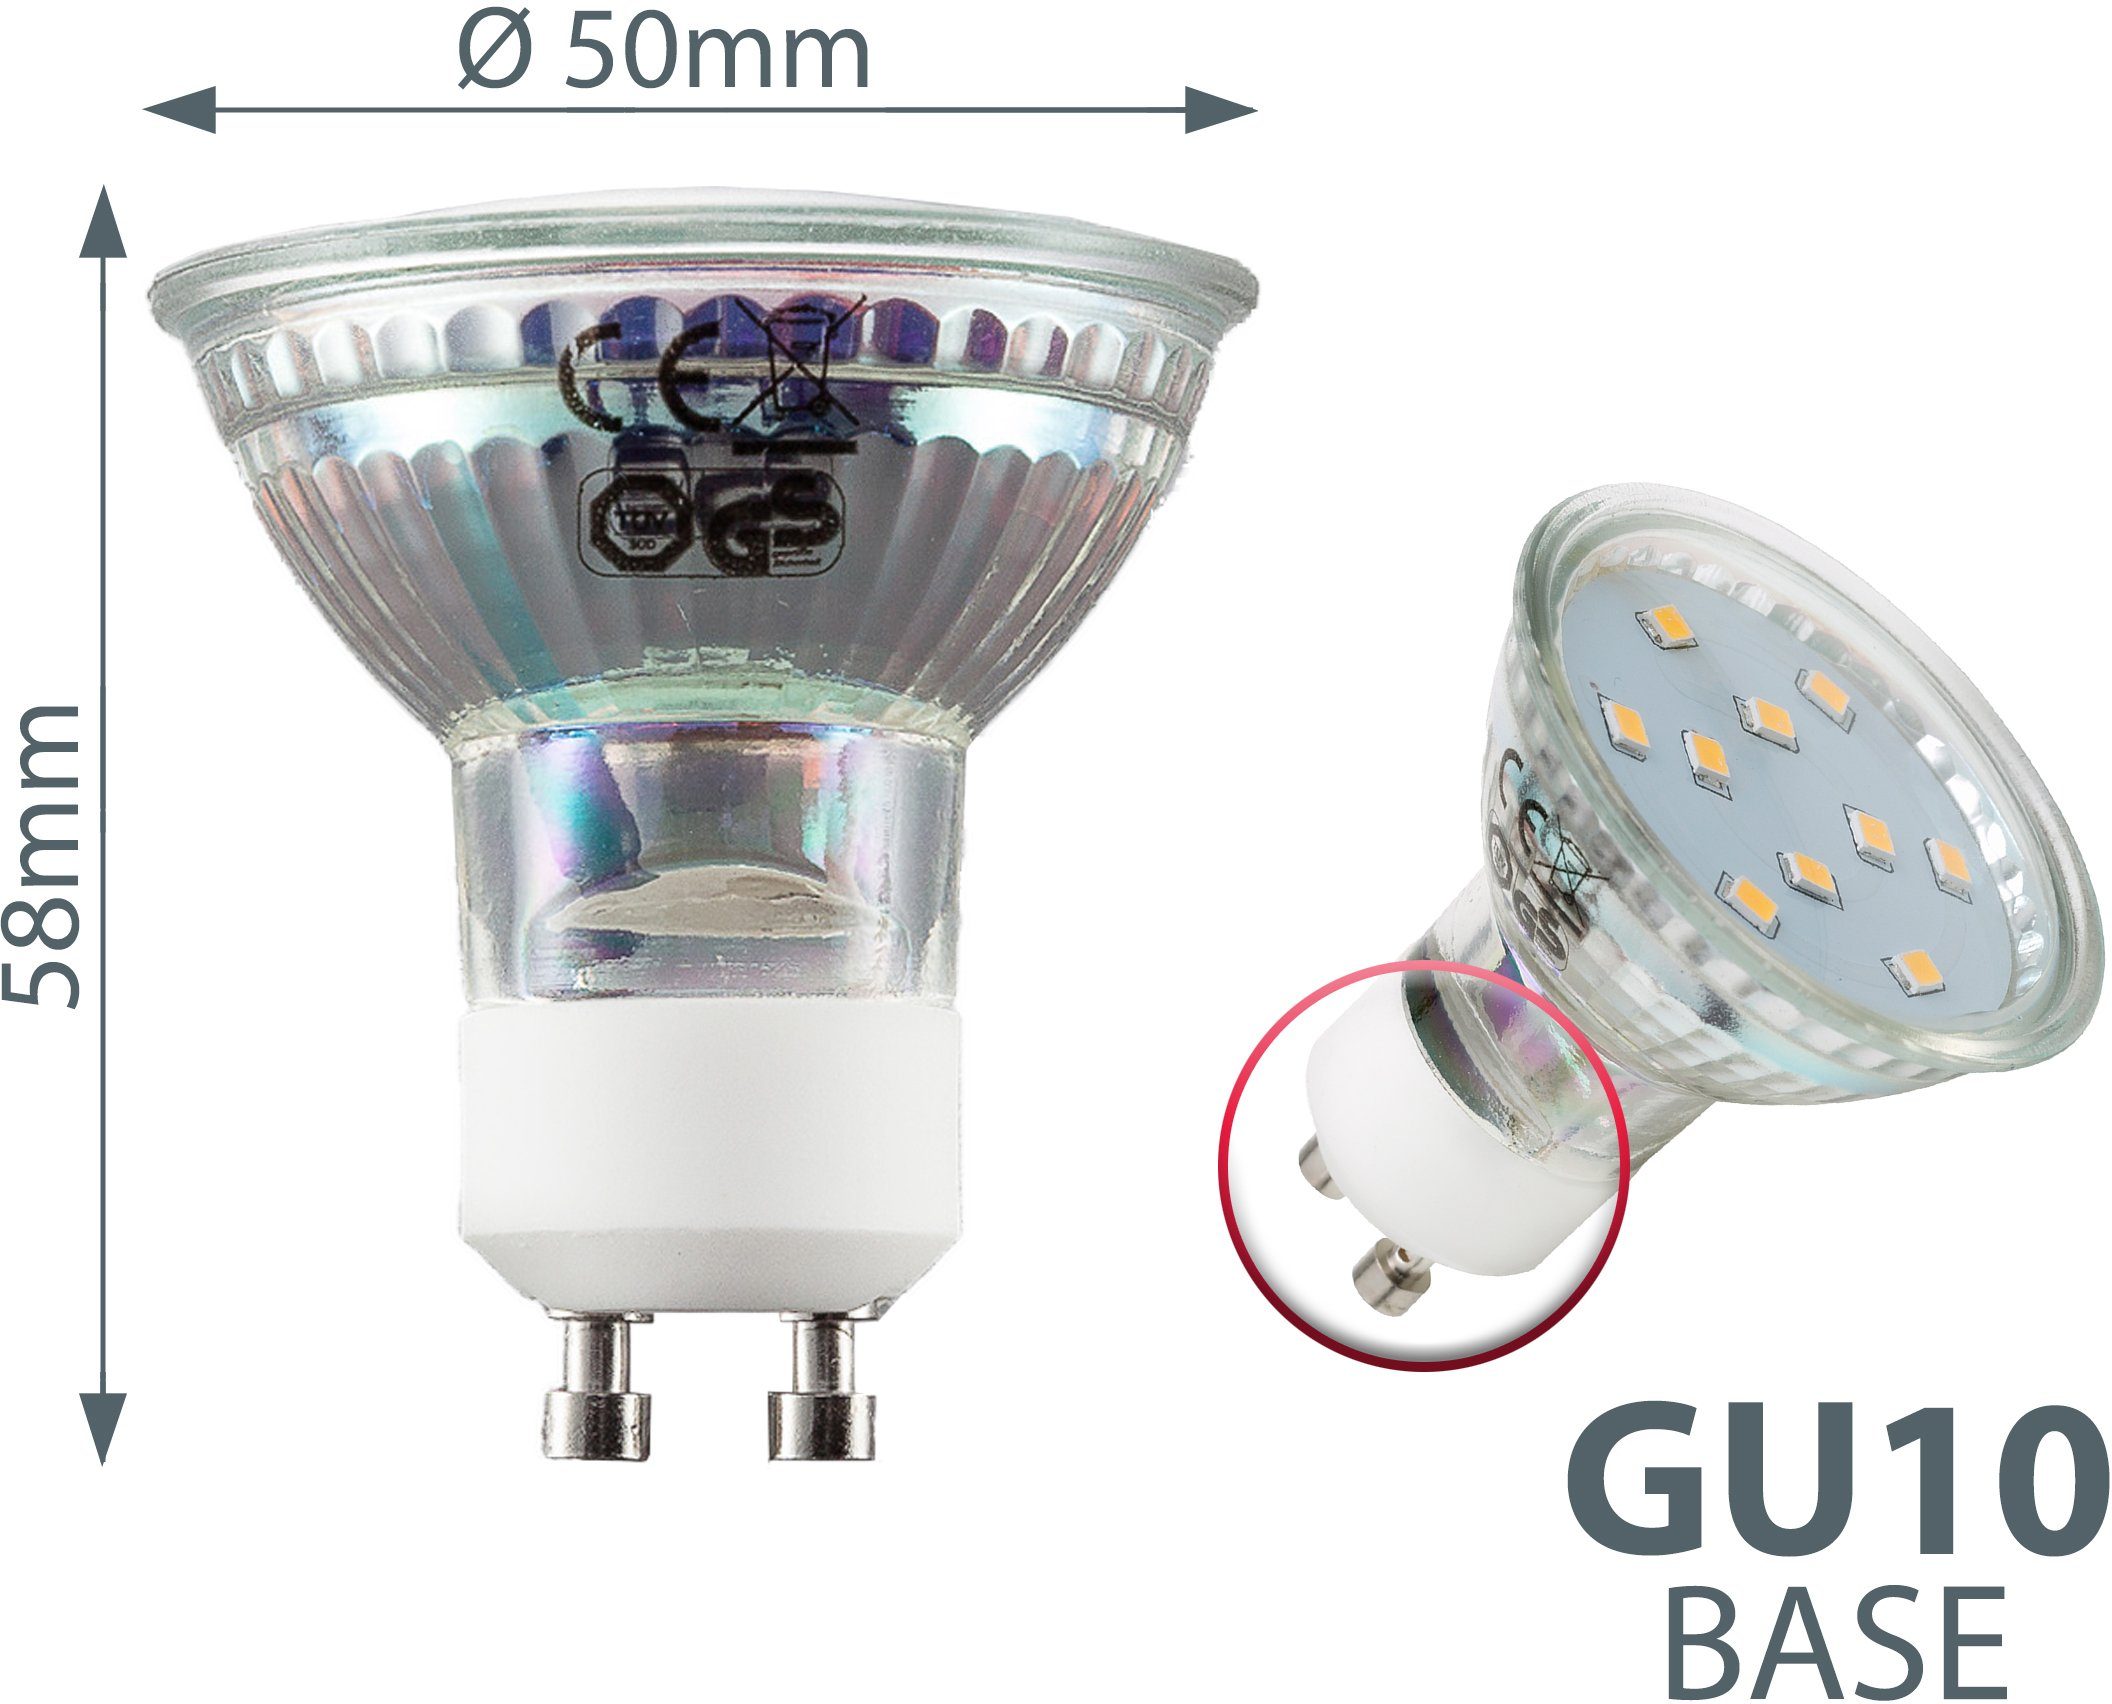 LED LED-Leuchtmittel, Lumen Birne Warmweiß, Energiesparlampe 250 3W GU10, B.K.Licht St., Lampe 3.000K 5